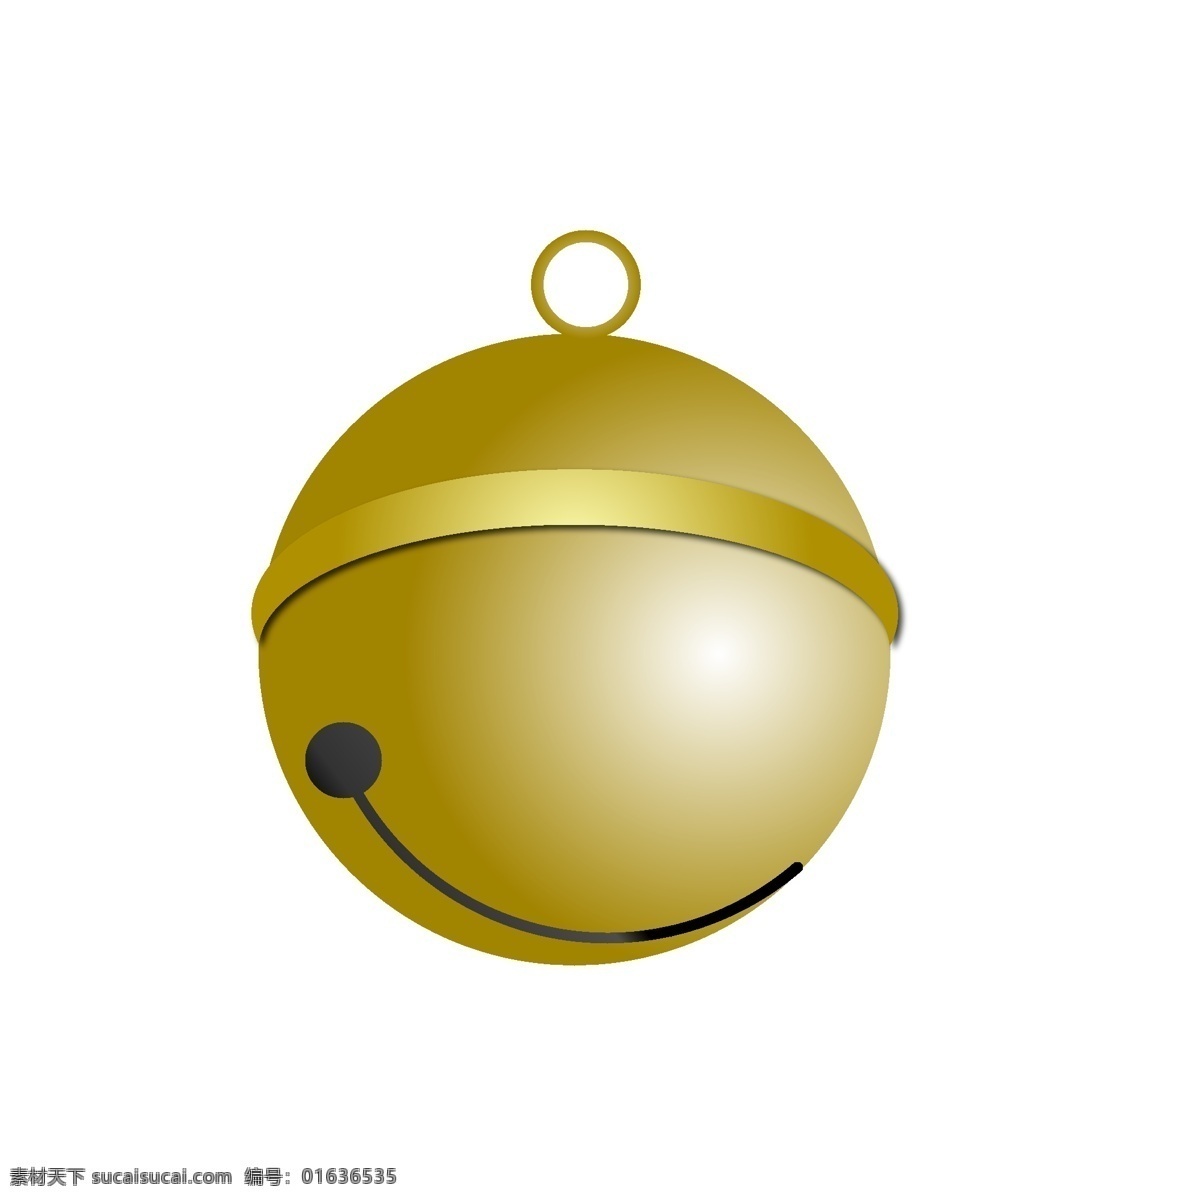 铃铛 圣诞 装饰 图案 元素 金色 可爱 装饰图案 设计元素